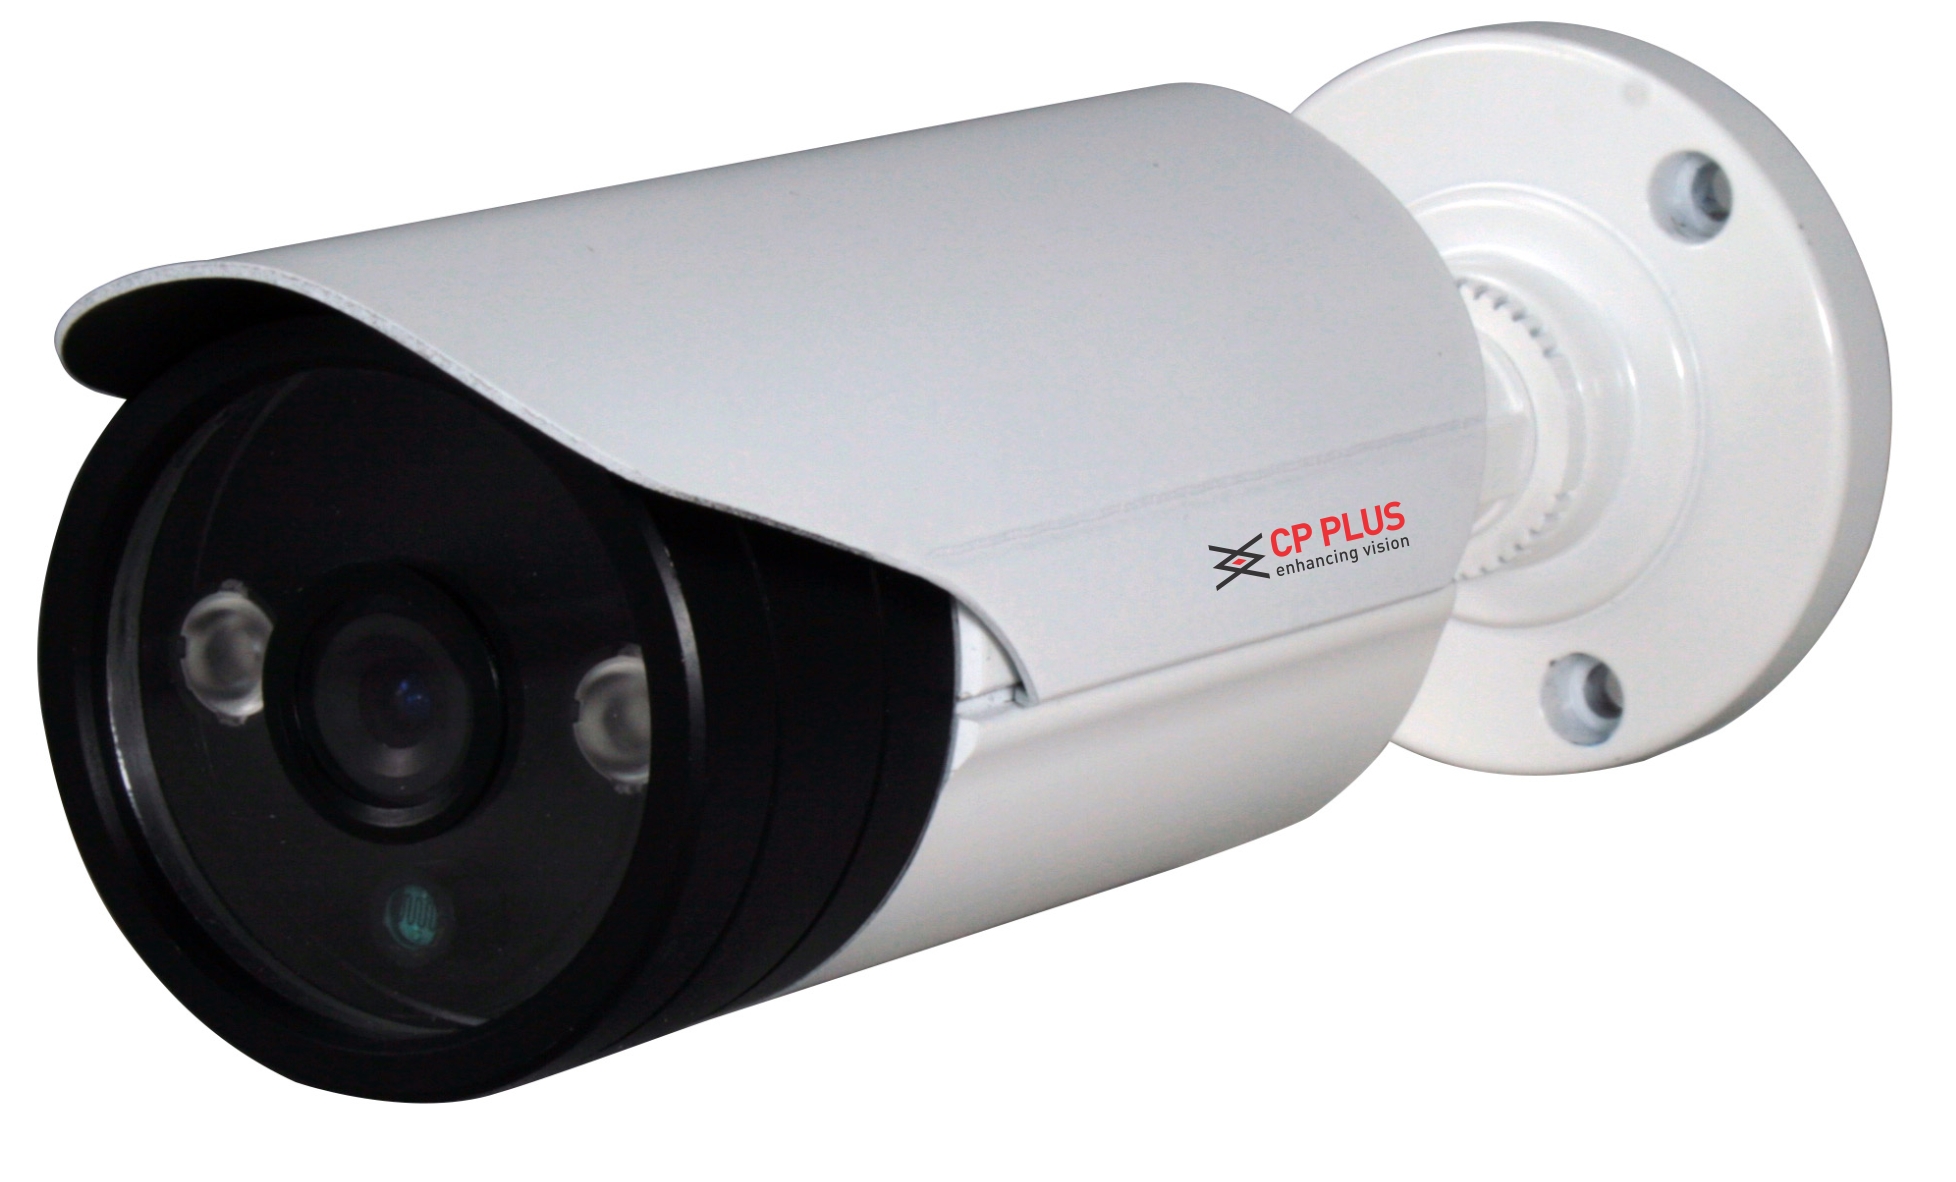  CCTV Camera Dealers in Patna , CCTV Camera Price in Patna 